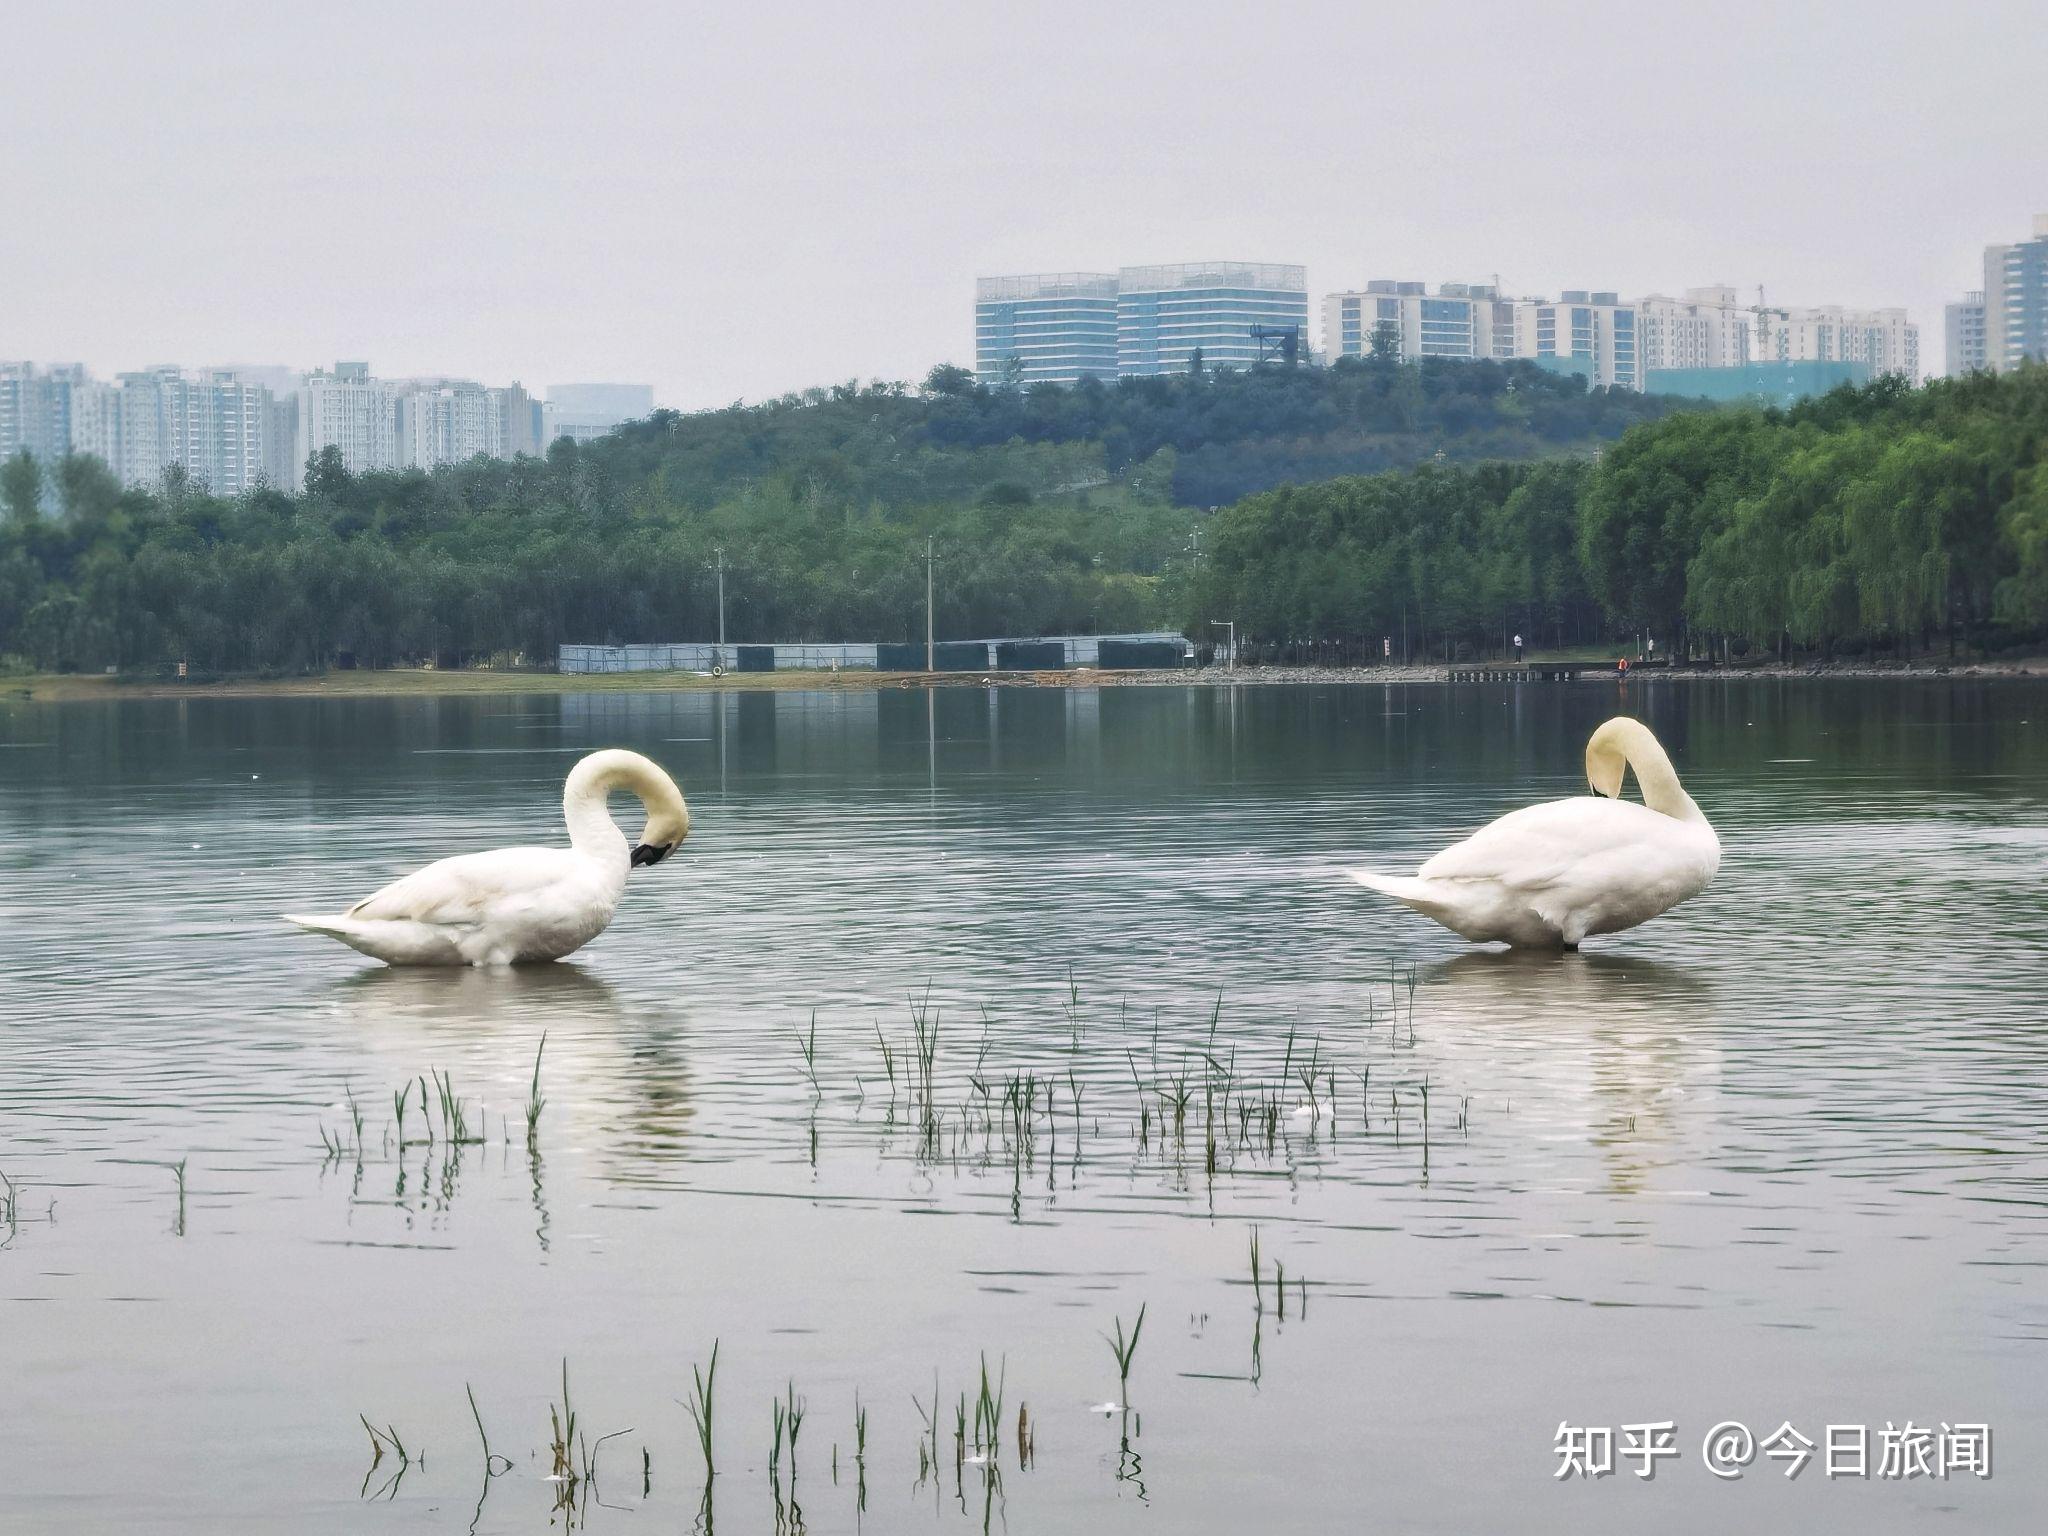 河南郑州龙湖湿地公园有群美丽的白天鹅